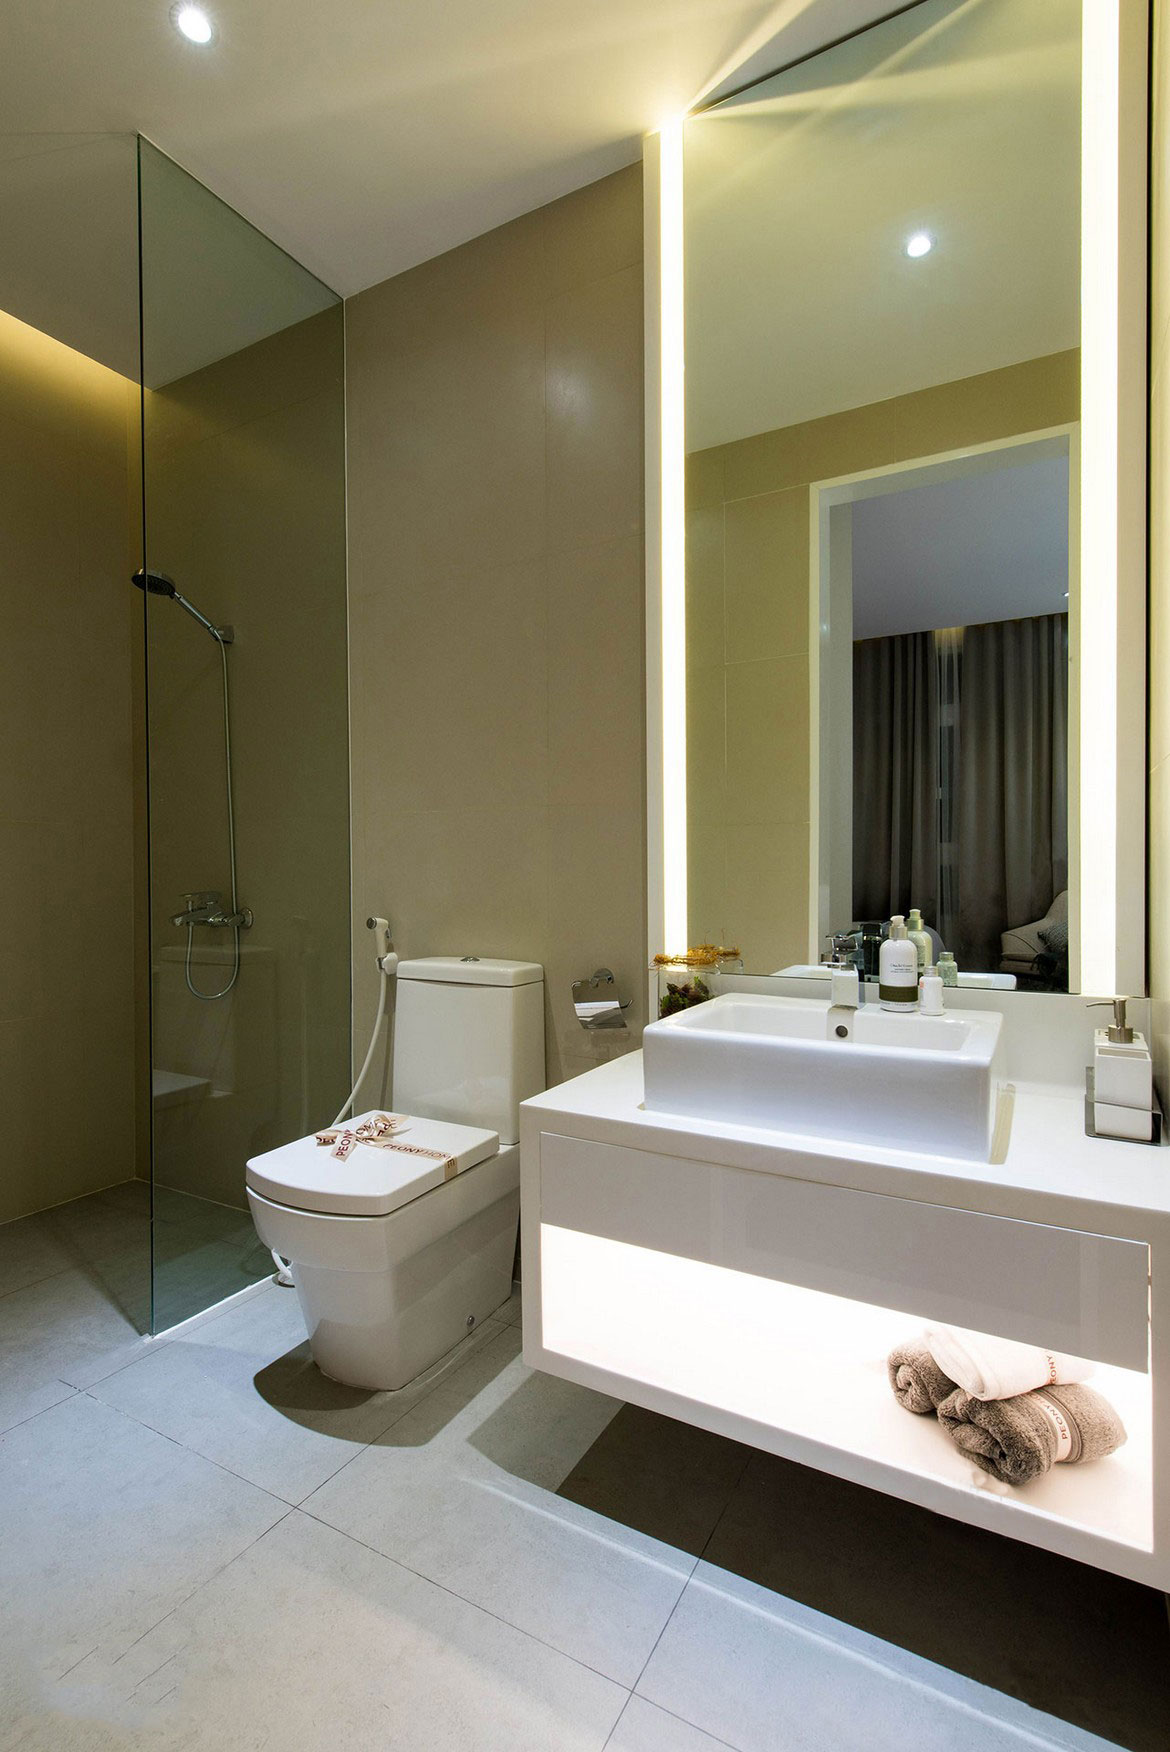 Nhà mẫu căn hộ An Gia Skyline diện tích 83m2 , thiết kế 3 phòng ngủ - 2 vệ sinh